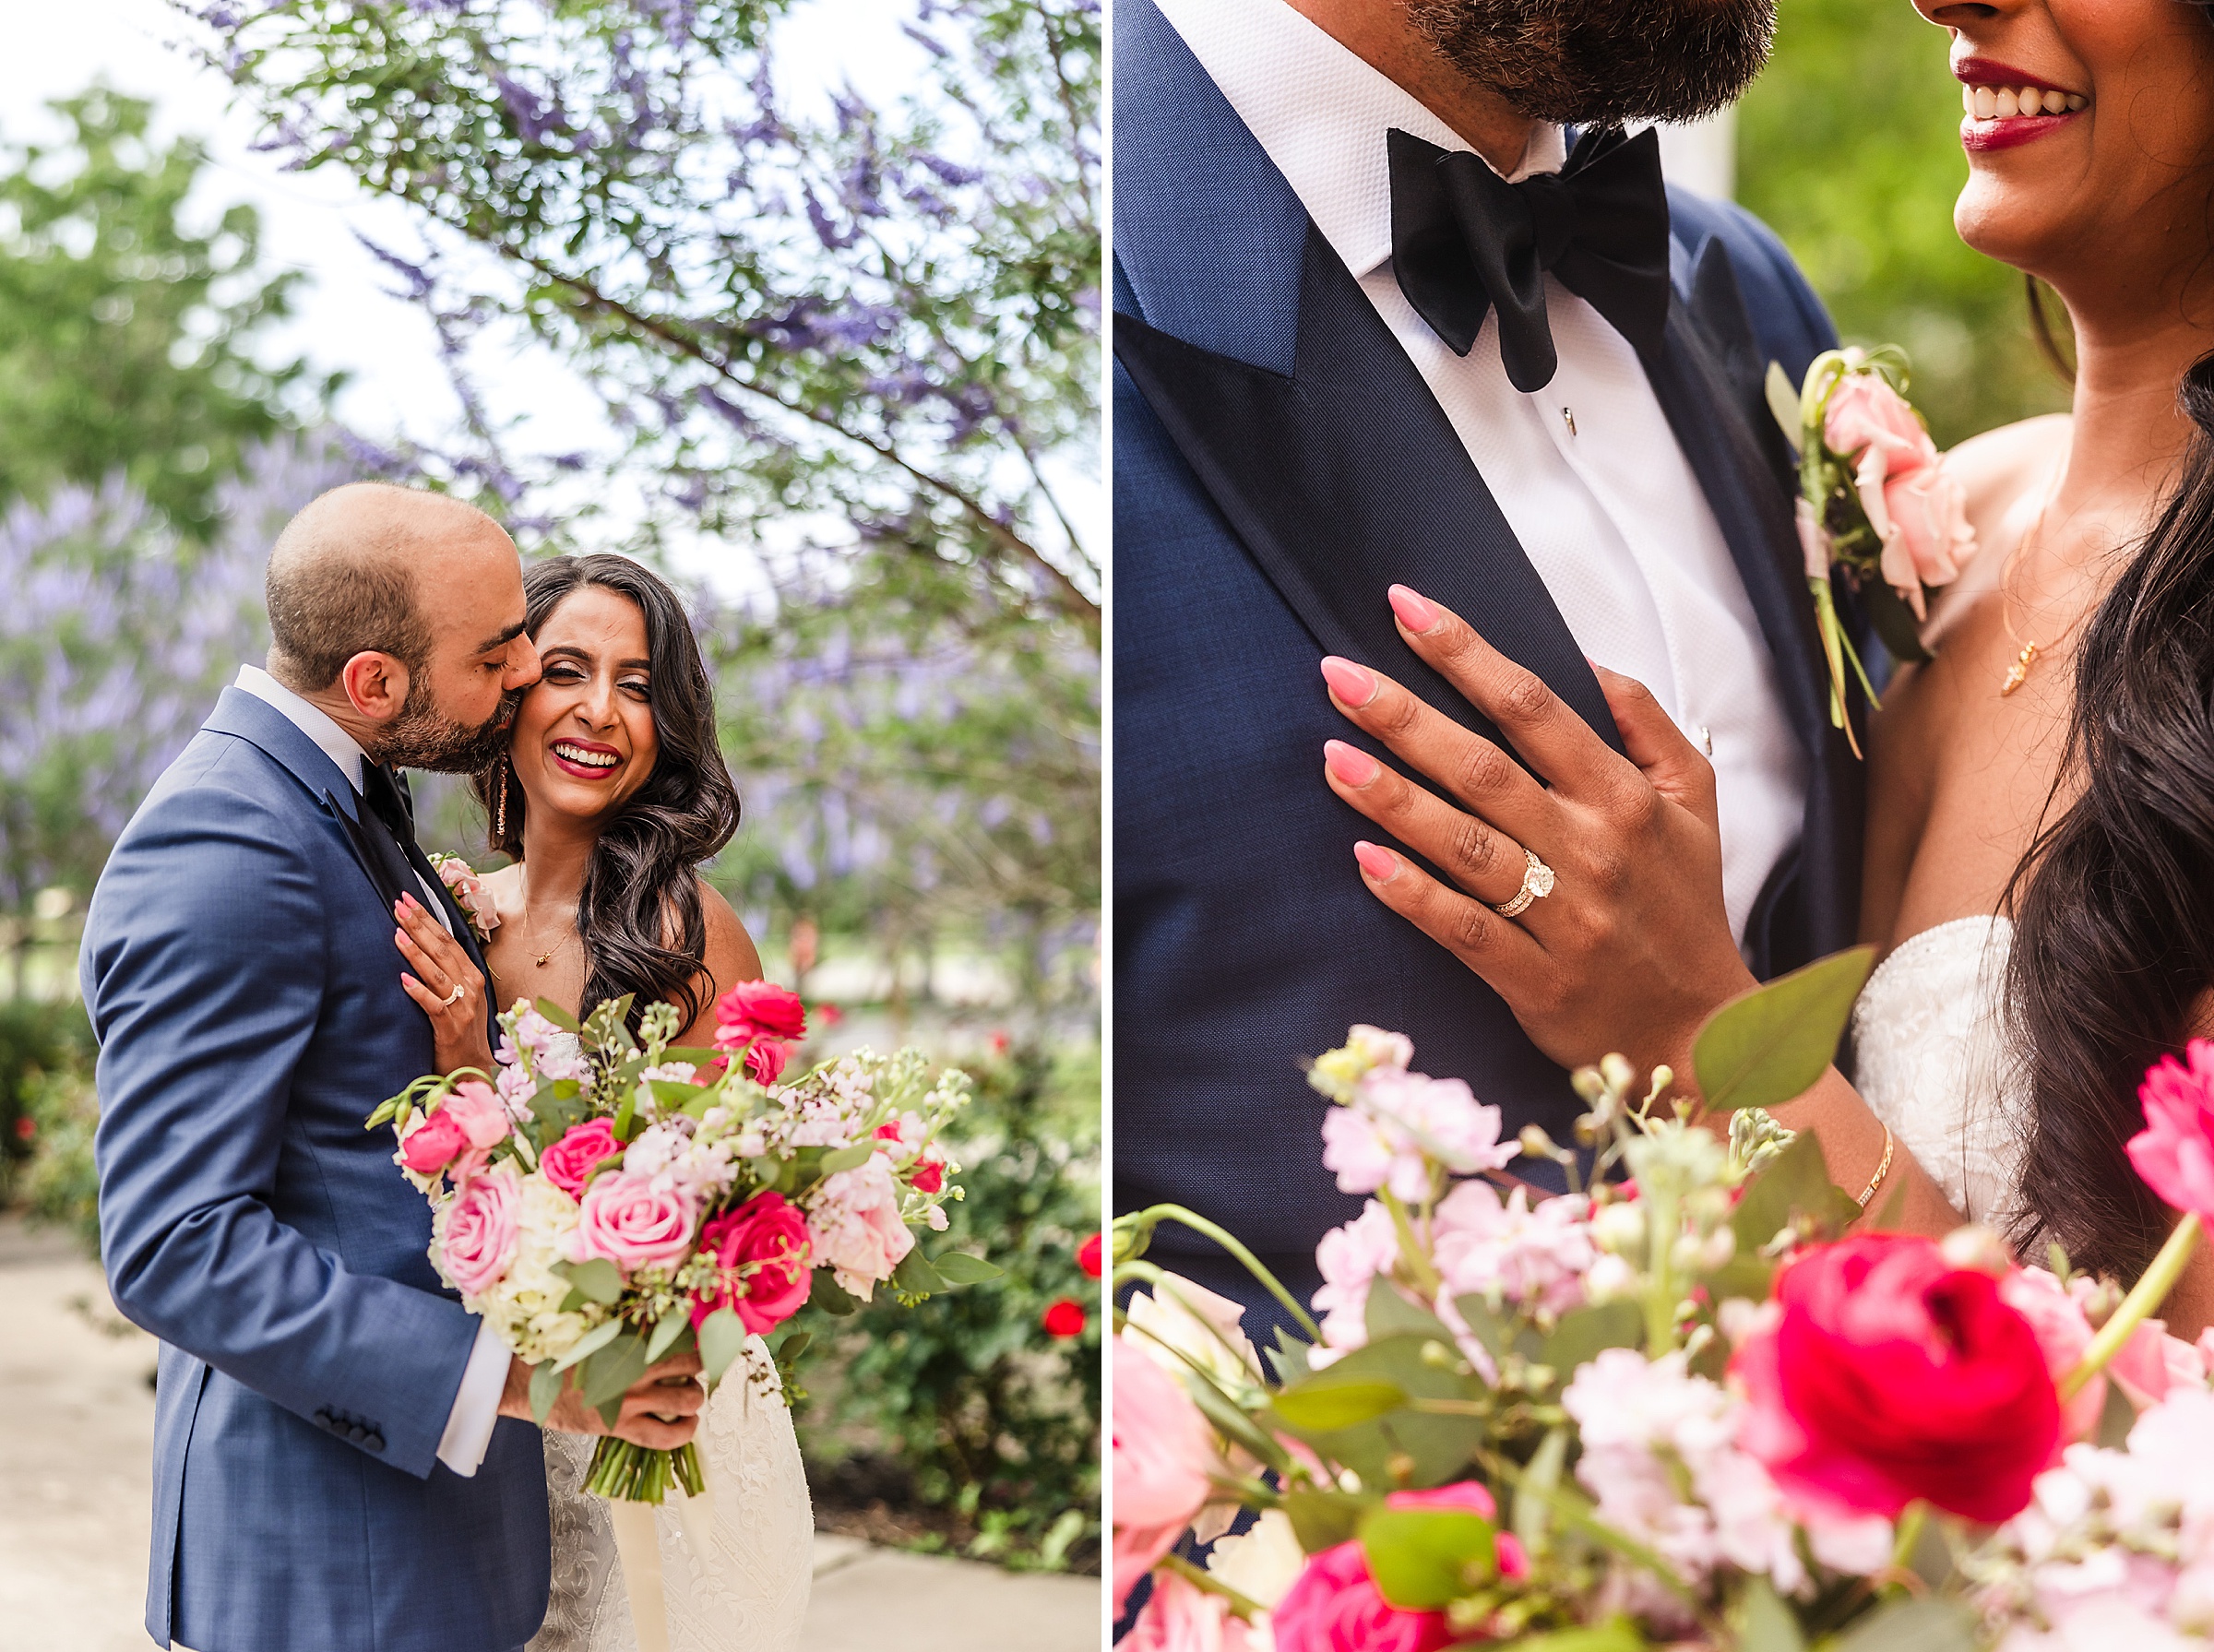 Couple celebrate their wedding during a wedding at Shiraz Garden in Bastrop, Texas.